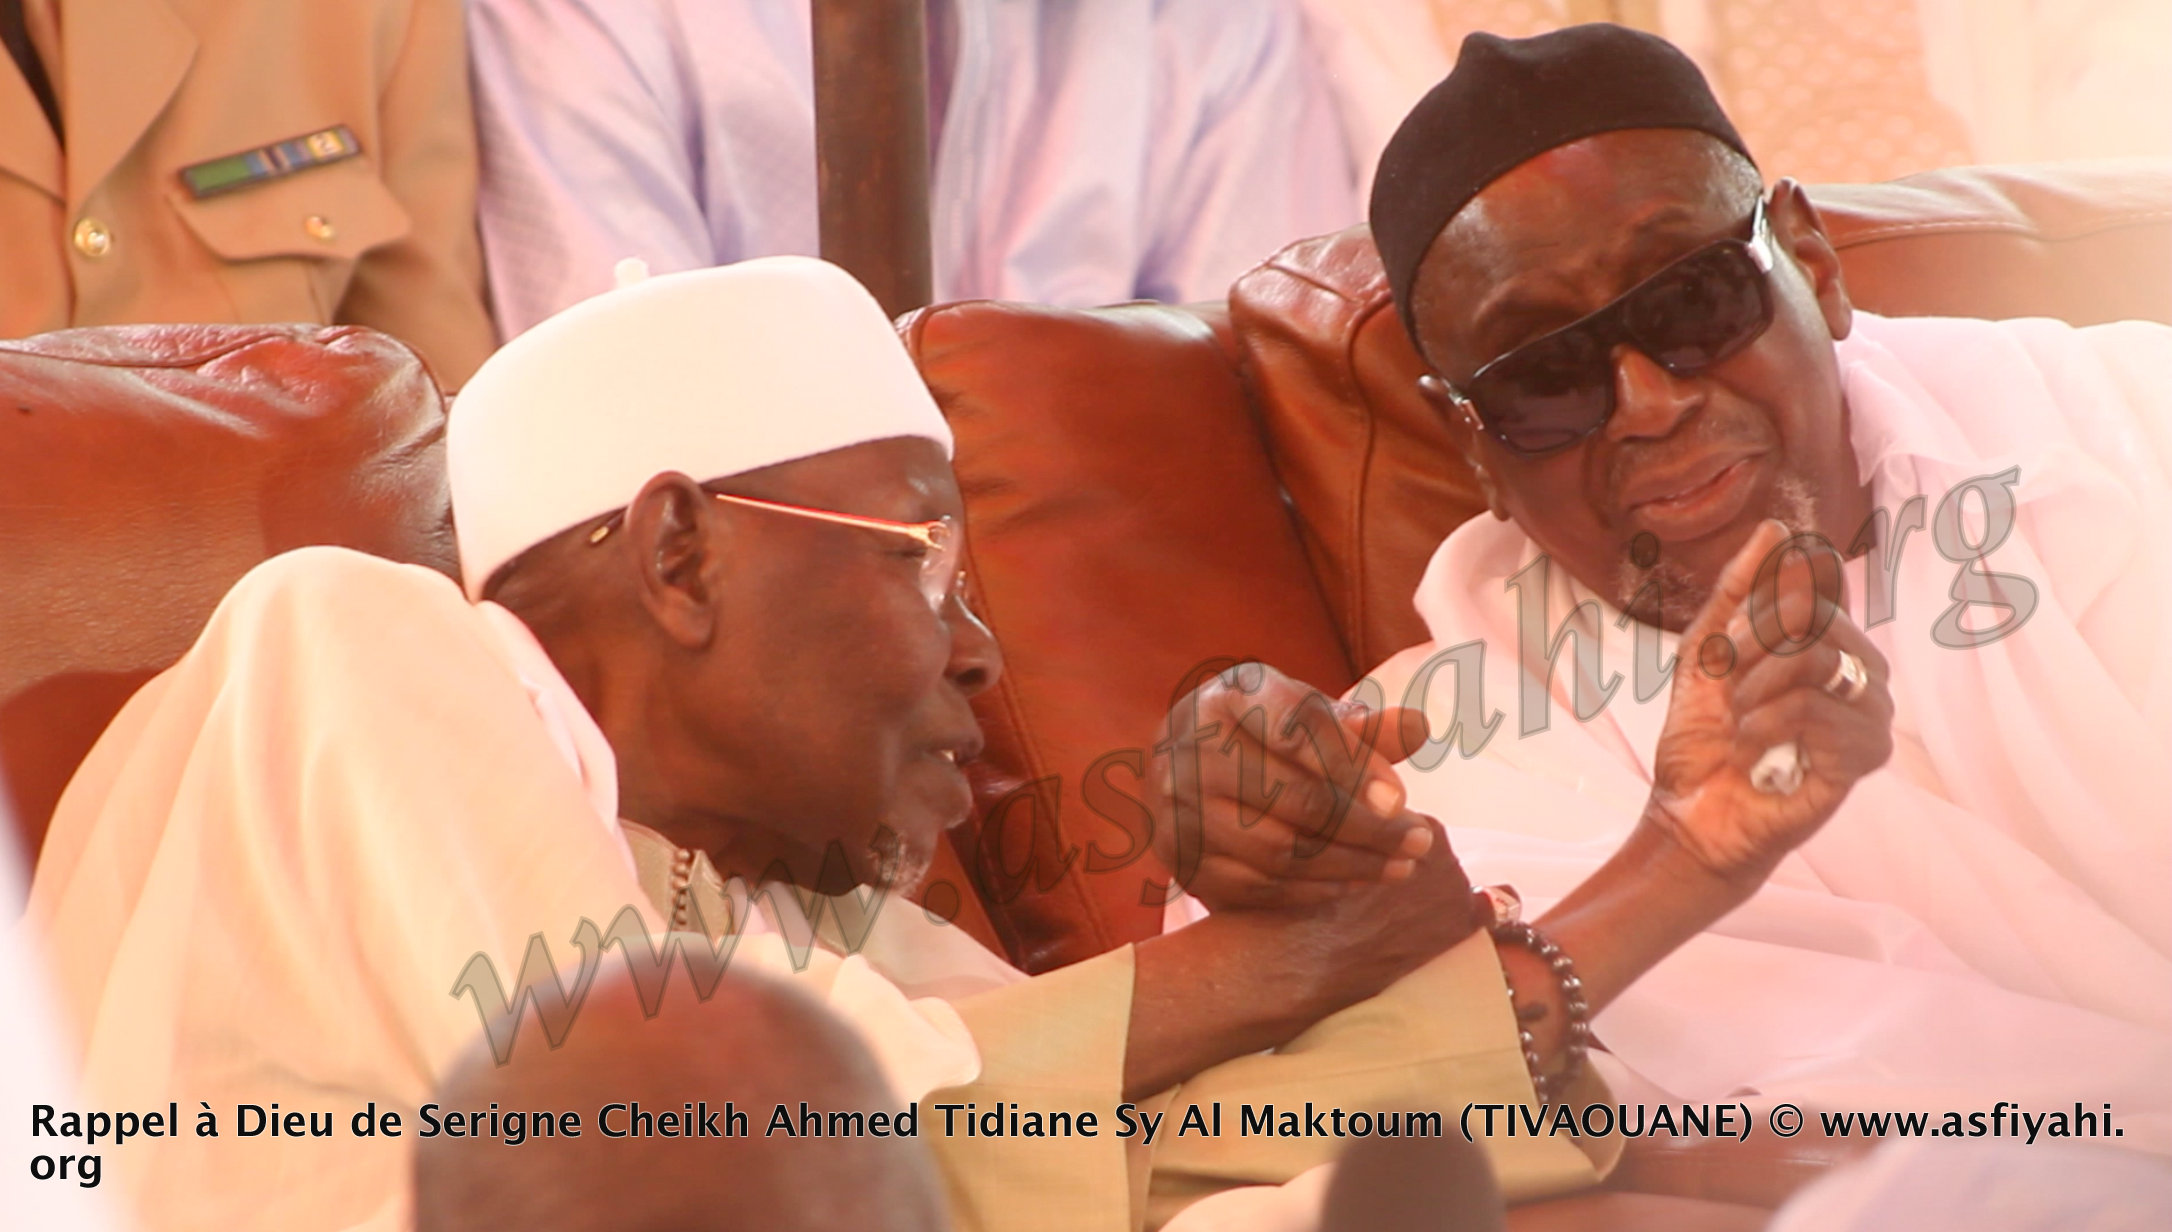 PHOTOS - RAPPEL À DIEU D'AL MAKTOUM: Les Images de la Présentation de Condoléances du President de la République 